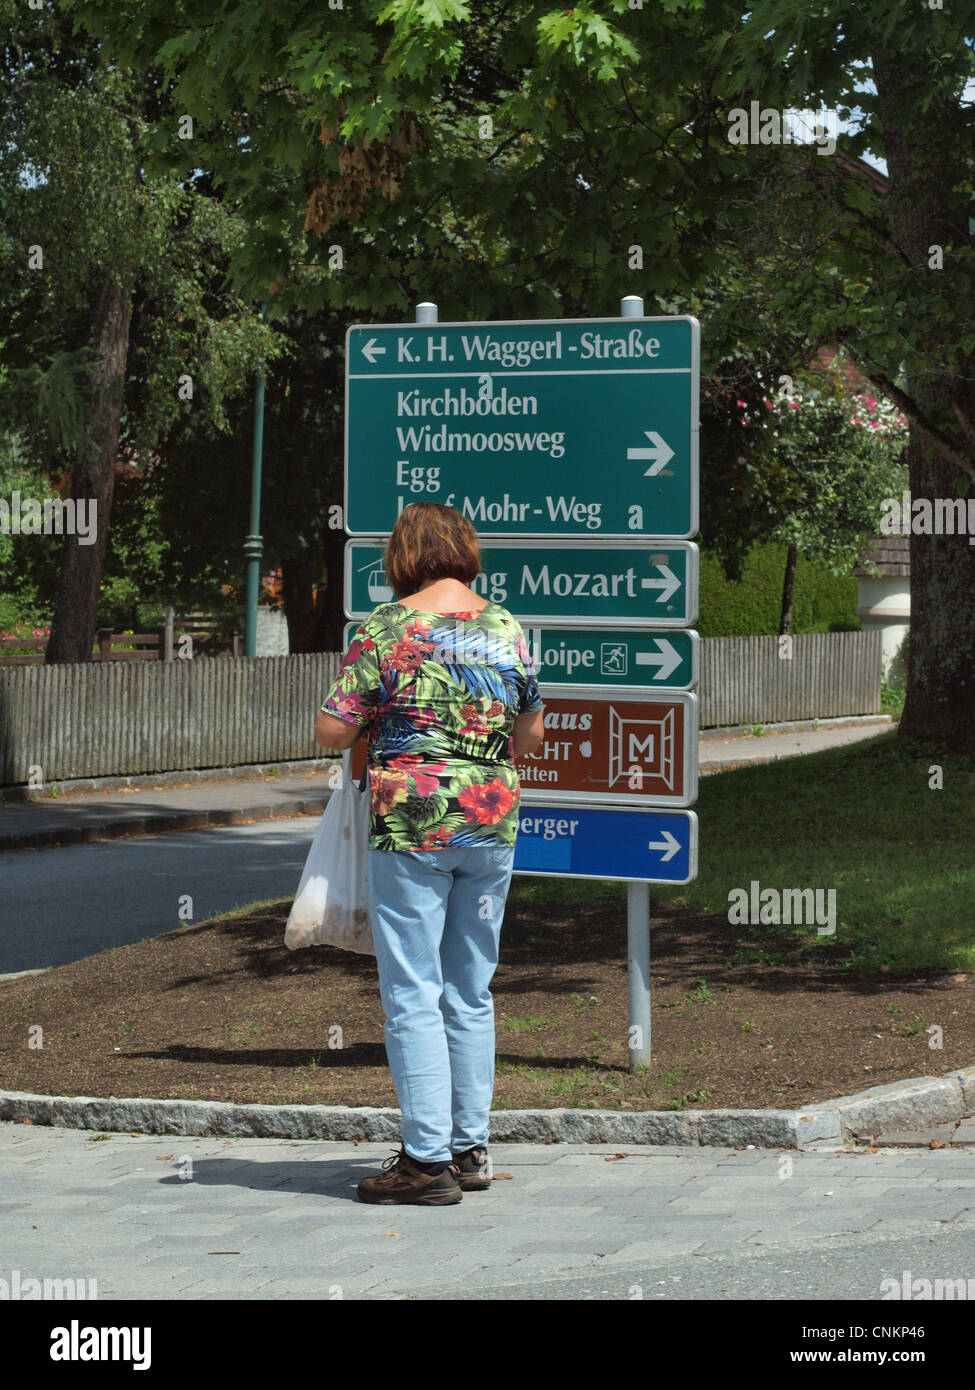 Une femelle'admirant un panneau routier à Kirchboden d accès aux sites touristiques locaux à Wargrain, près de Salzbourg en Autriche. Banque D'Images